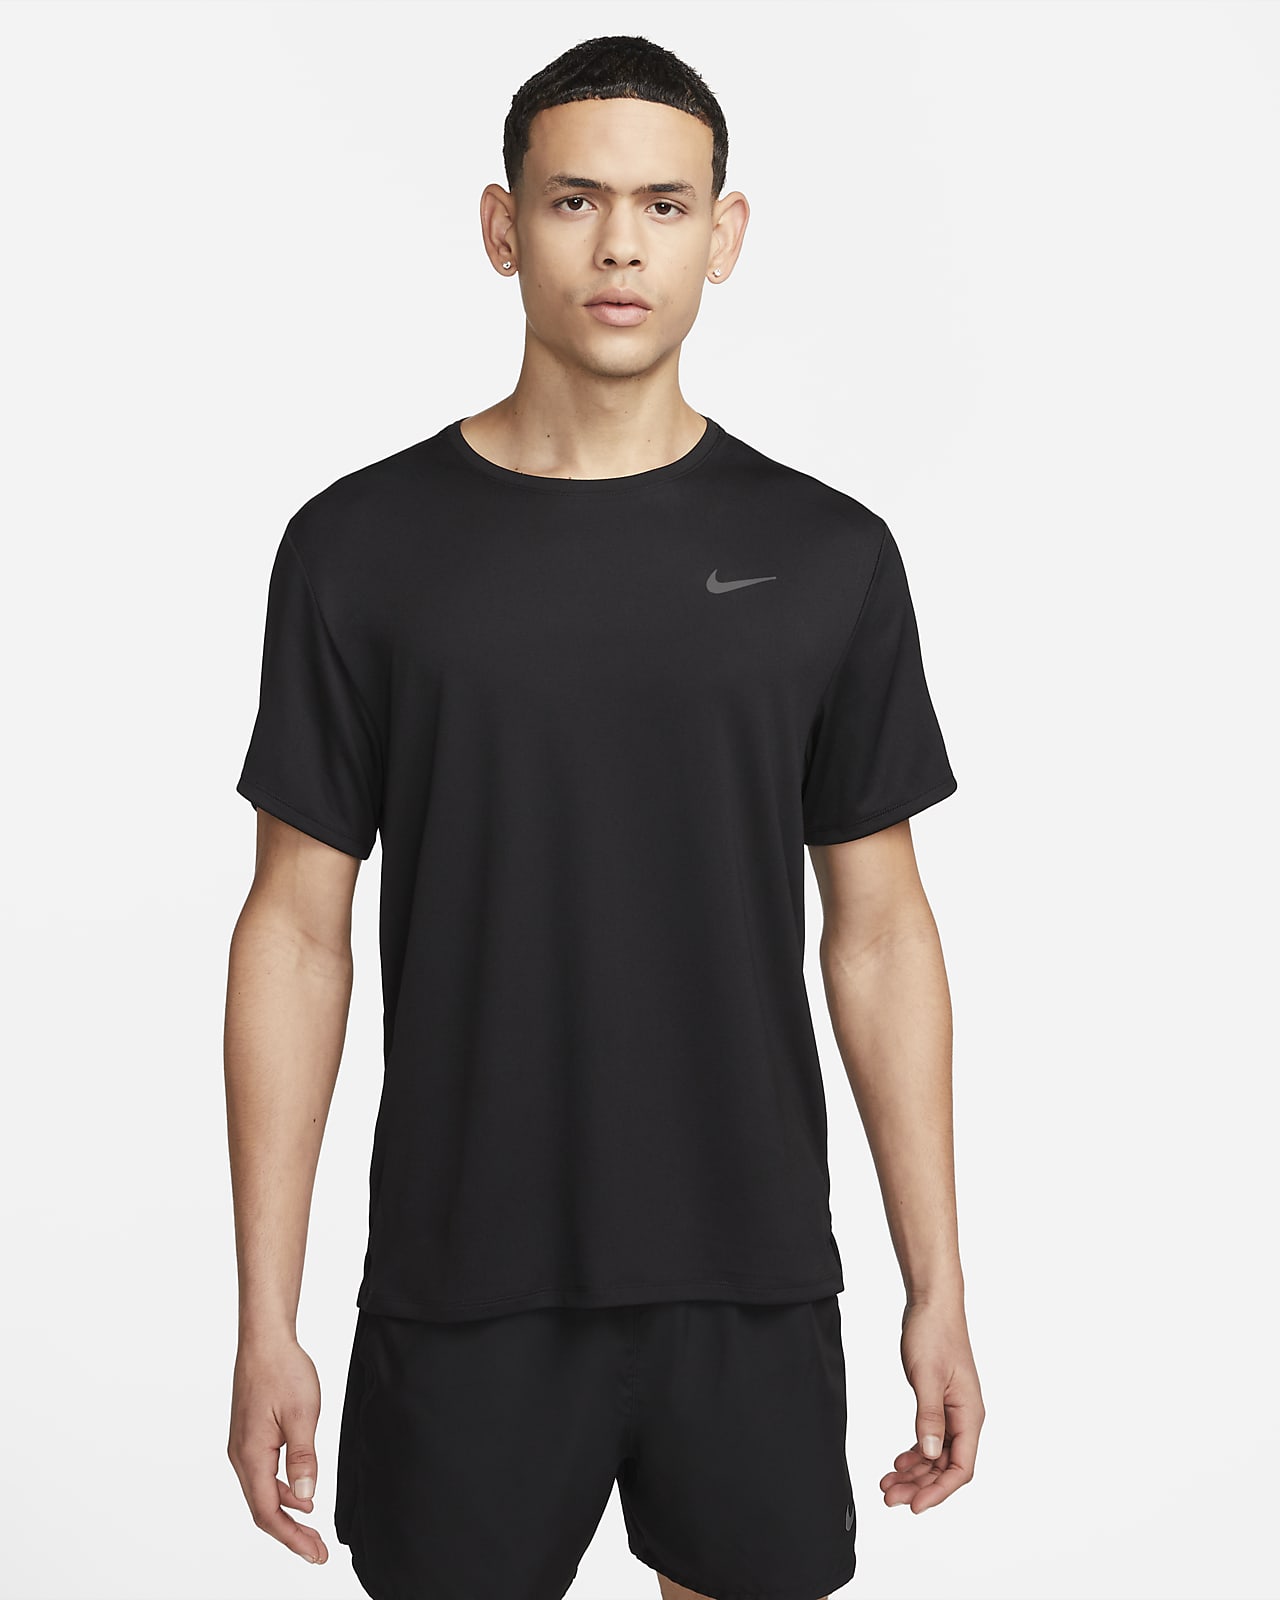 Goed voorbeeld omvang Nike Dri-FIT UV Miler Men's Short-Sleeve Running Top. Nike LU